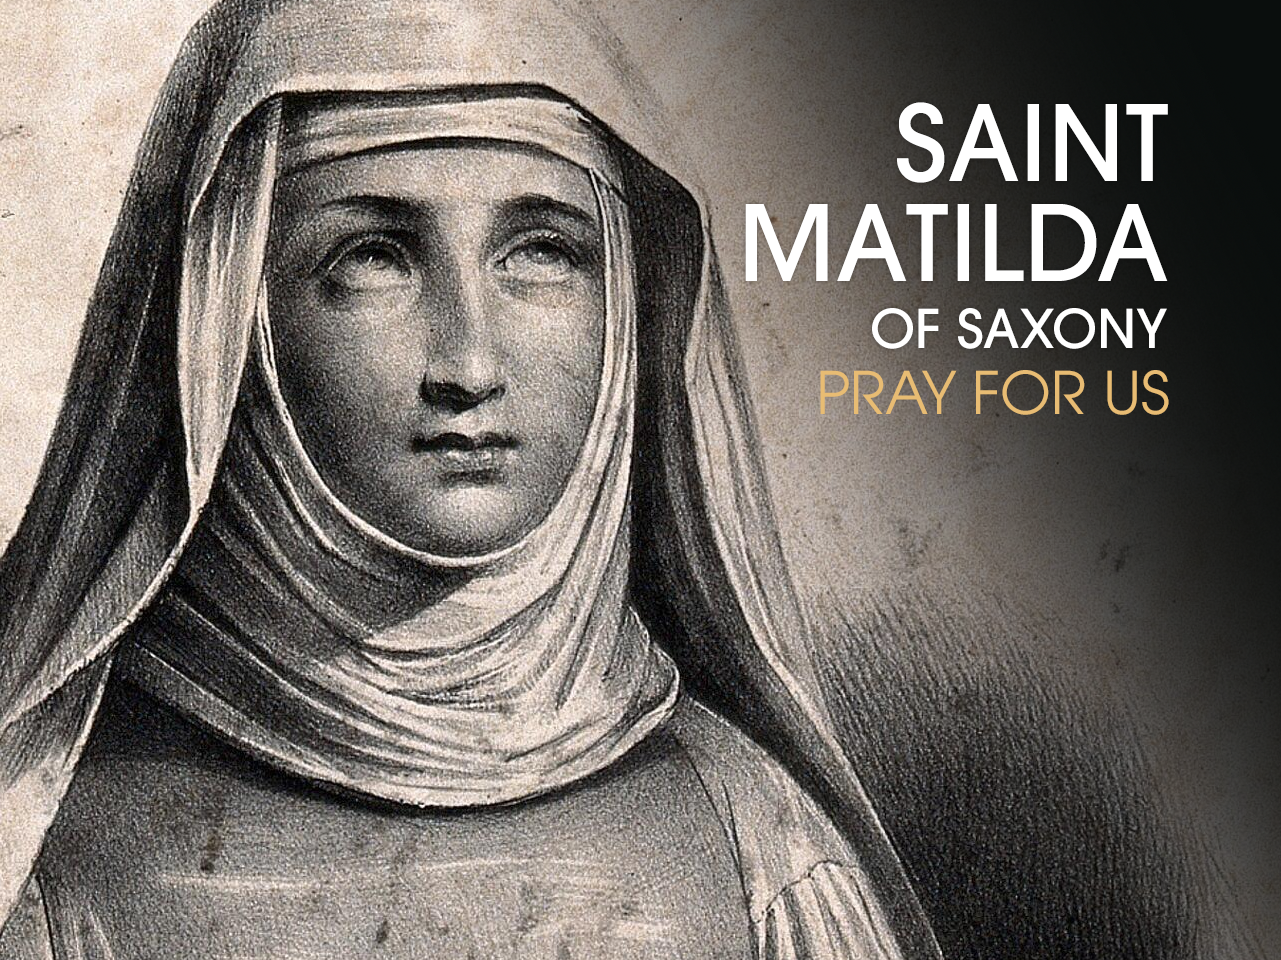 St. Matilda of Saxony